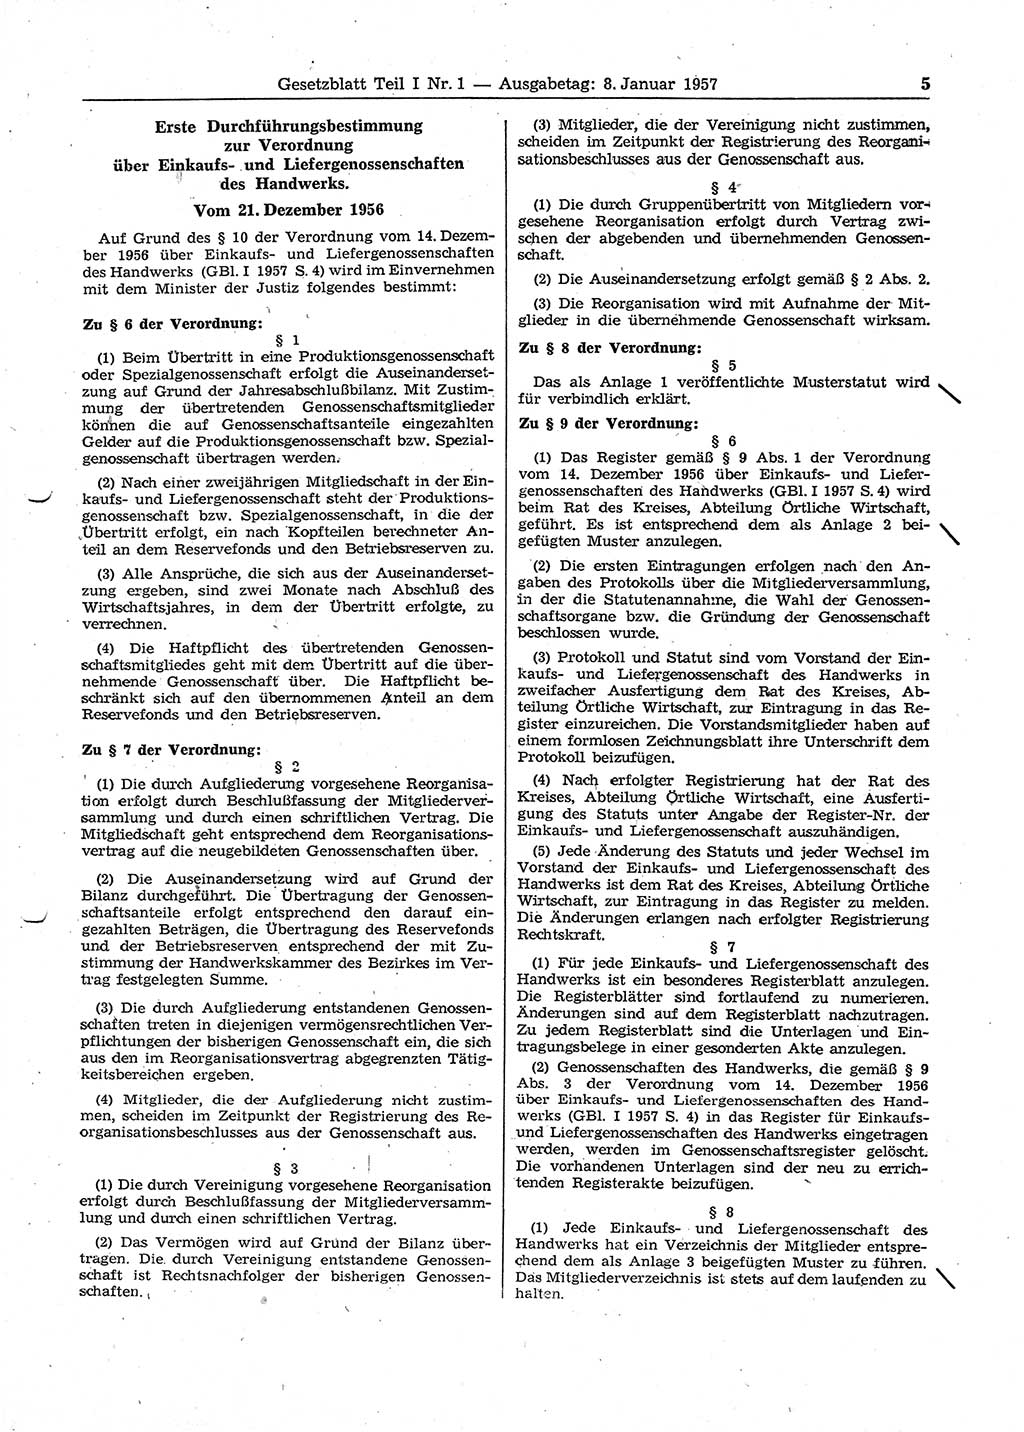 Gesetzblatt (GBl.) der Deutschen Demokratischen Republik (DDR) Teil Ⅰ 1957, Seite 5 (GBl. DDR Ⅰ 1957, S. 5)